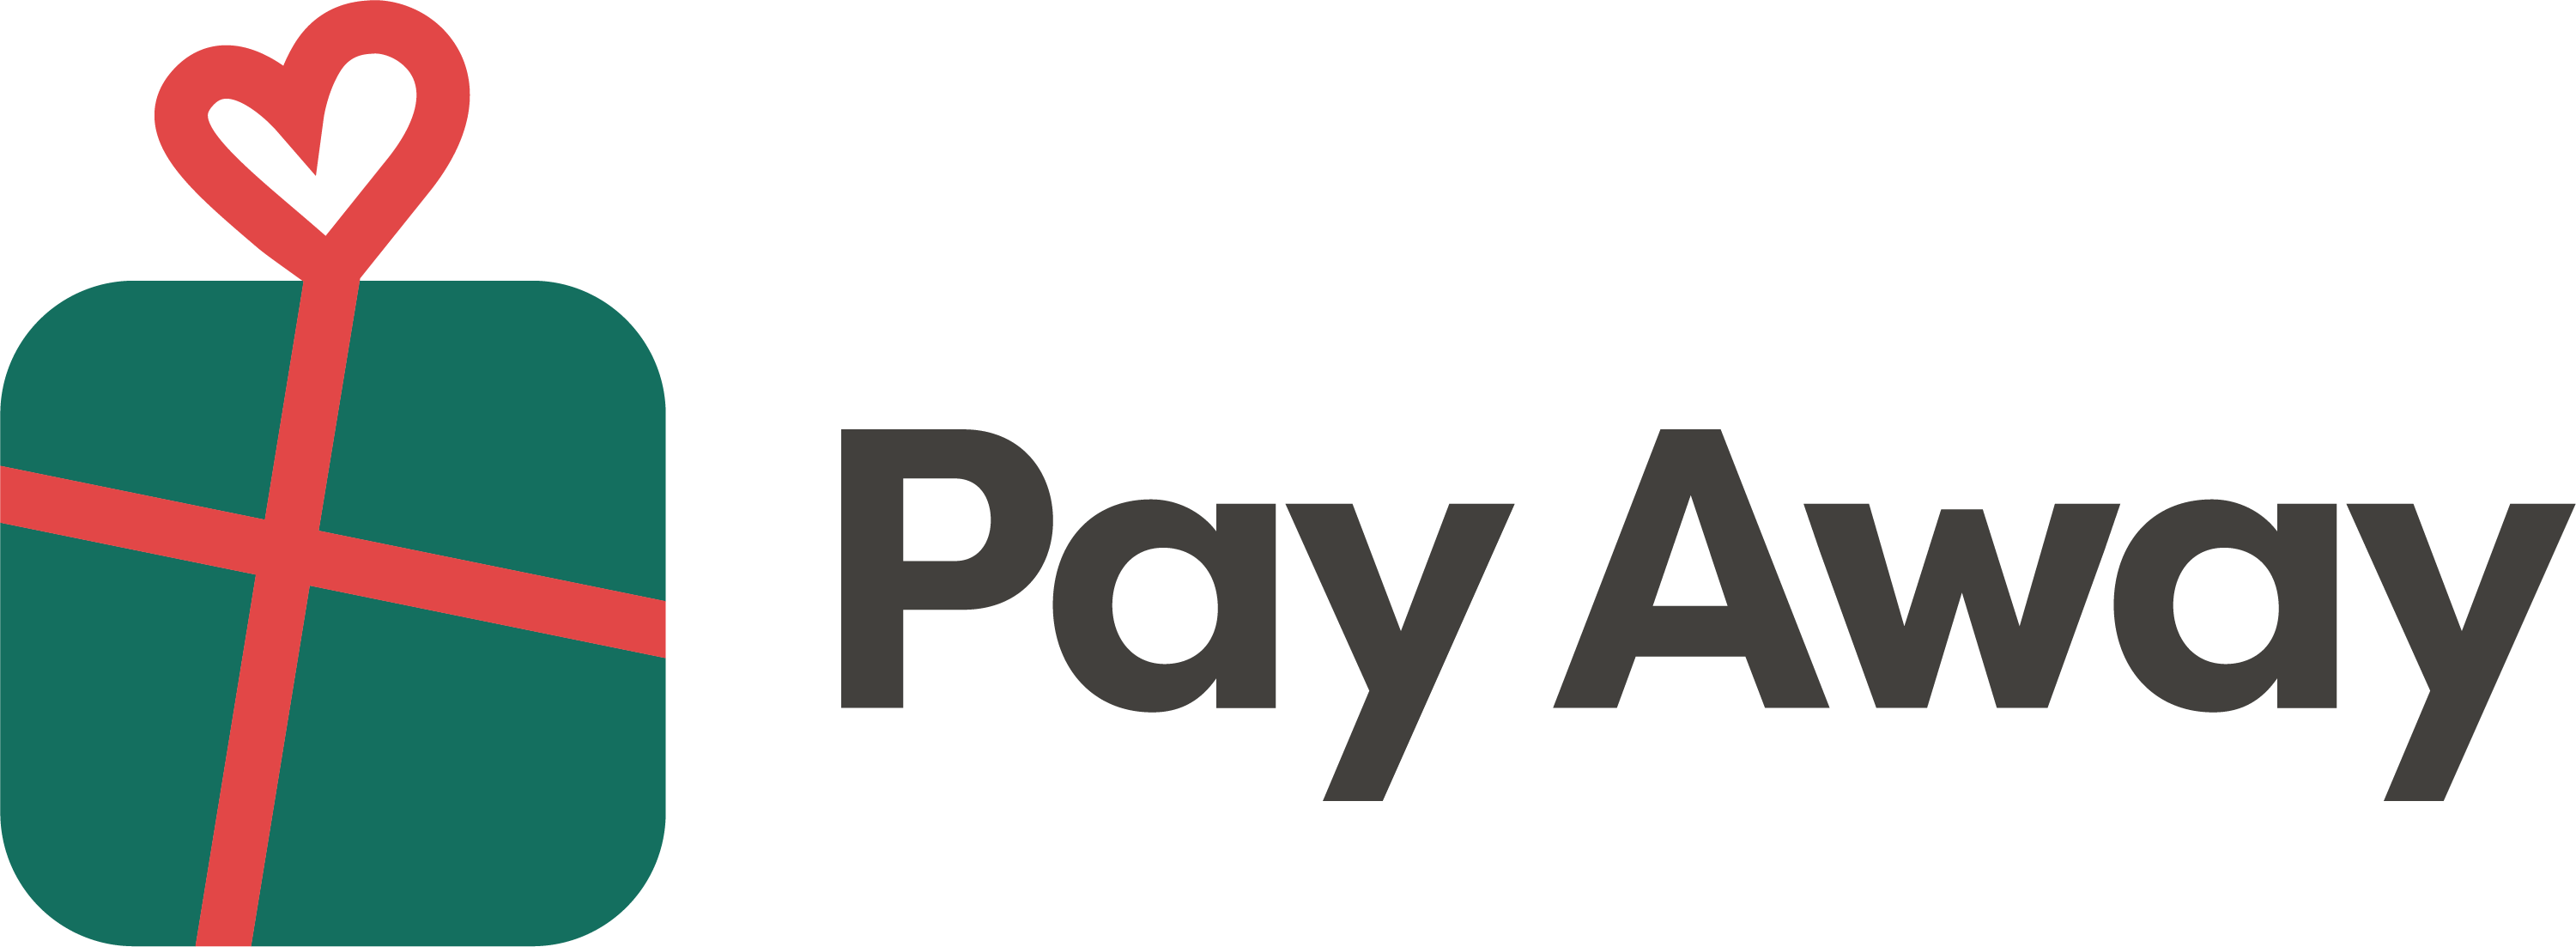 PayAway_Logo_0826-01